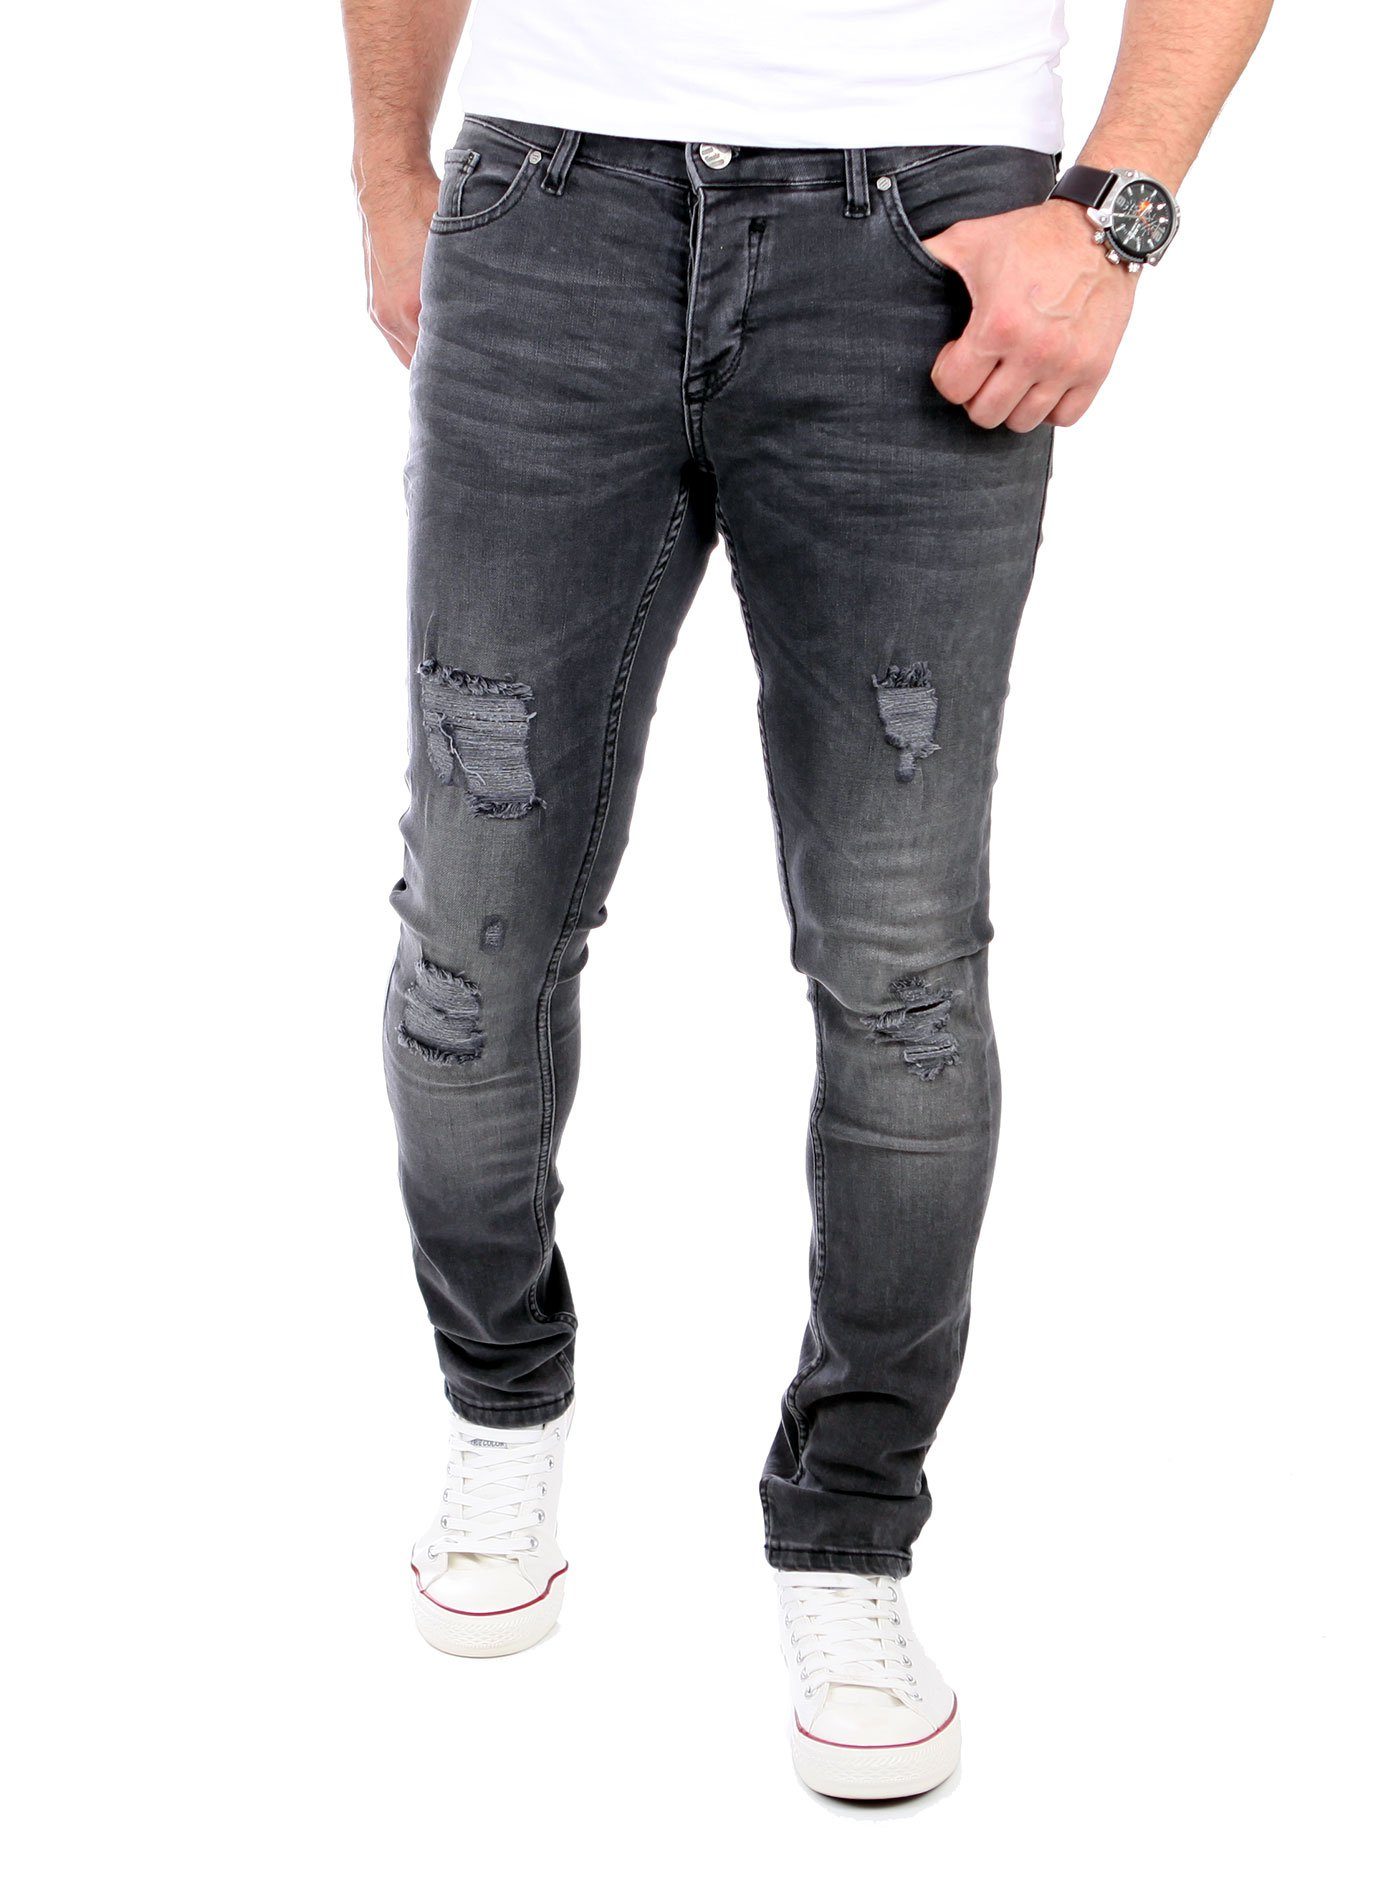 Reslad Slim Destroyed-Jeans Fit Slim Jeans-Hose Destroyed Jeans Look Herren Reslad Denim Stretch schwarz Look Fit Jeans Destroyed